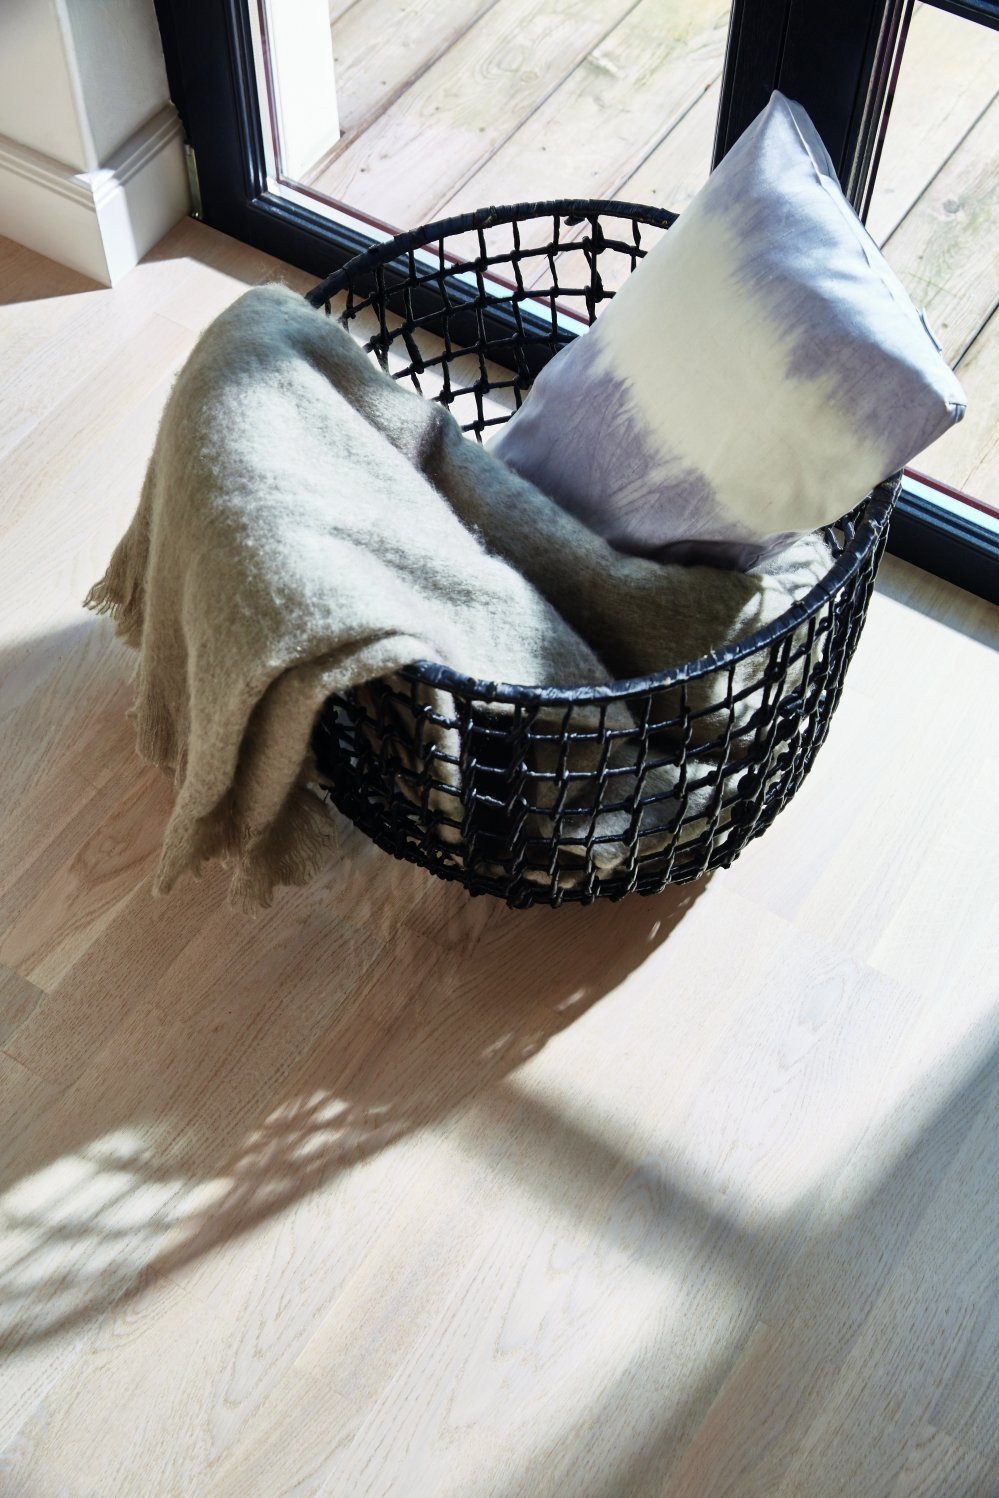 Houten vloeren - LPC02001037-Parketloods-eiken-wit-scandinavisch design-Vloer-basket